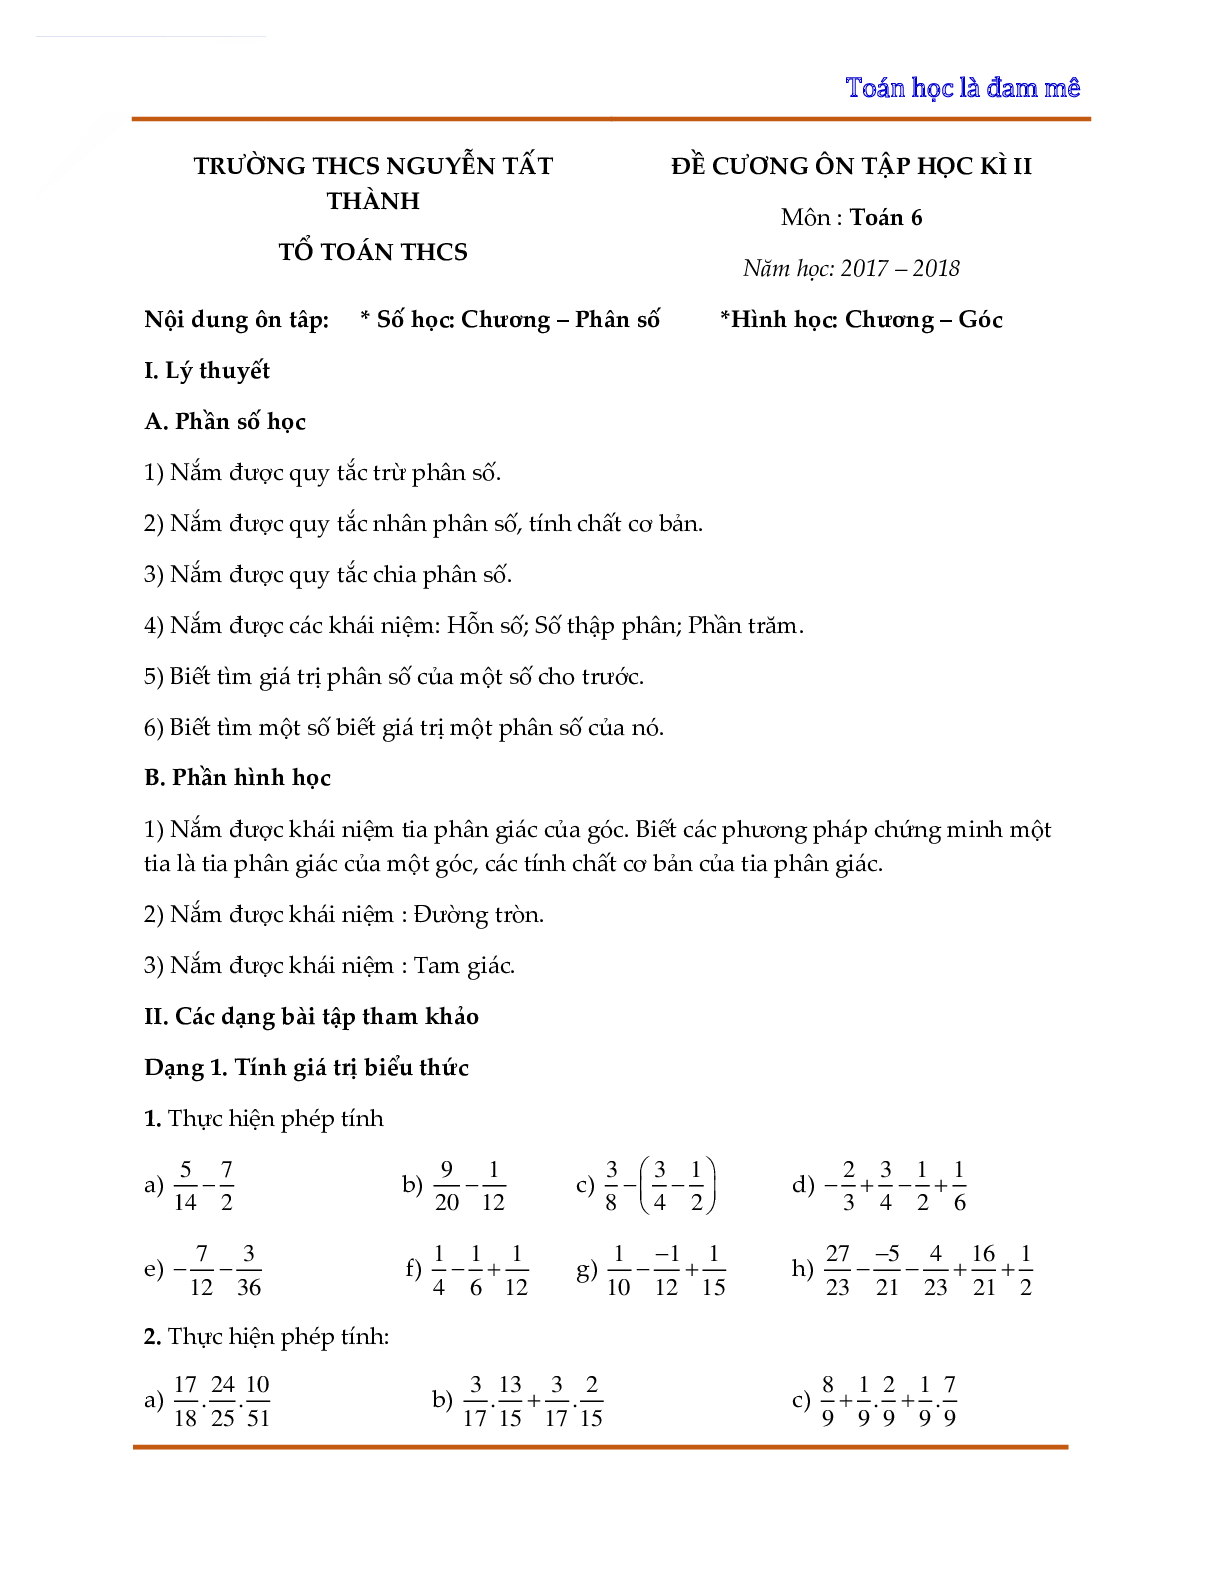 Đề cương ôn tập học kỳ II toán 6 THCS Nguyễn Tất Thành - Hà Nội (trang 1)